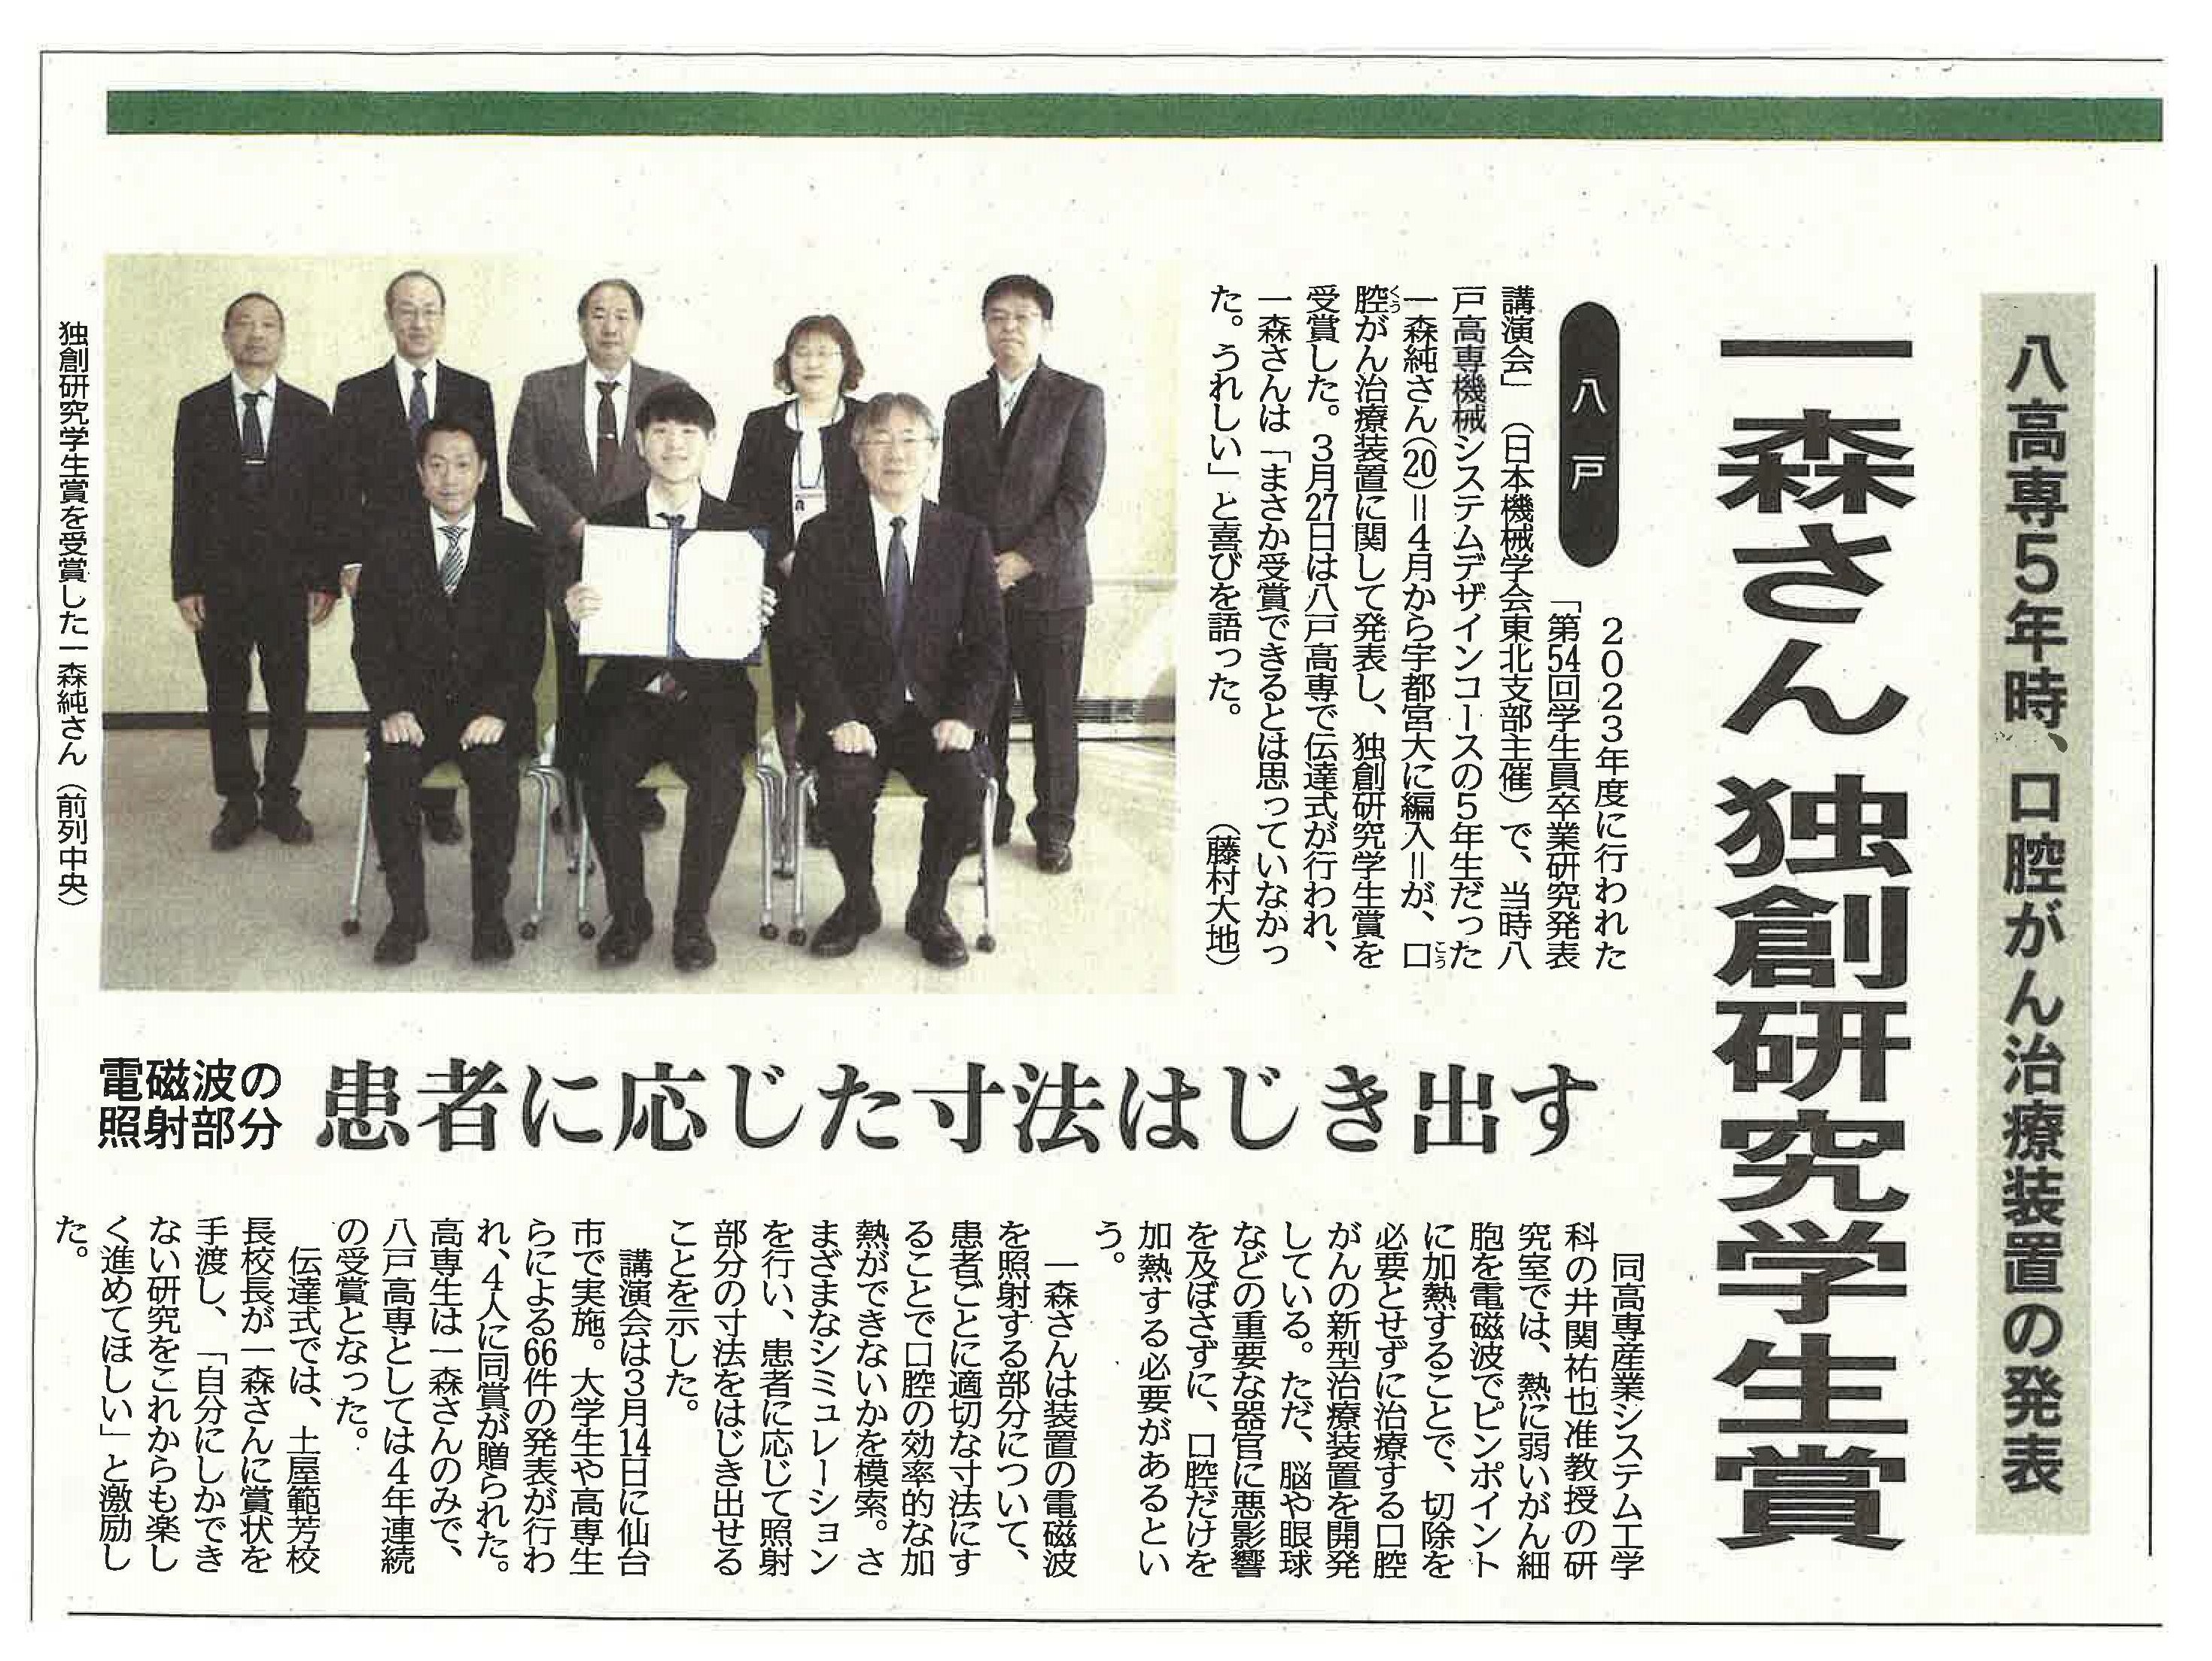 本校学生が日本機械学会東北学生会で東北支部独創研究学生賞を受賞し、地元新聞に取り上げられました